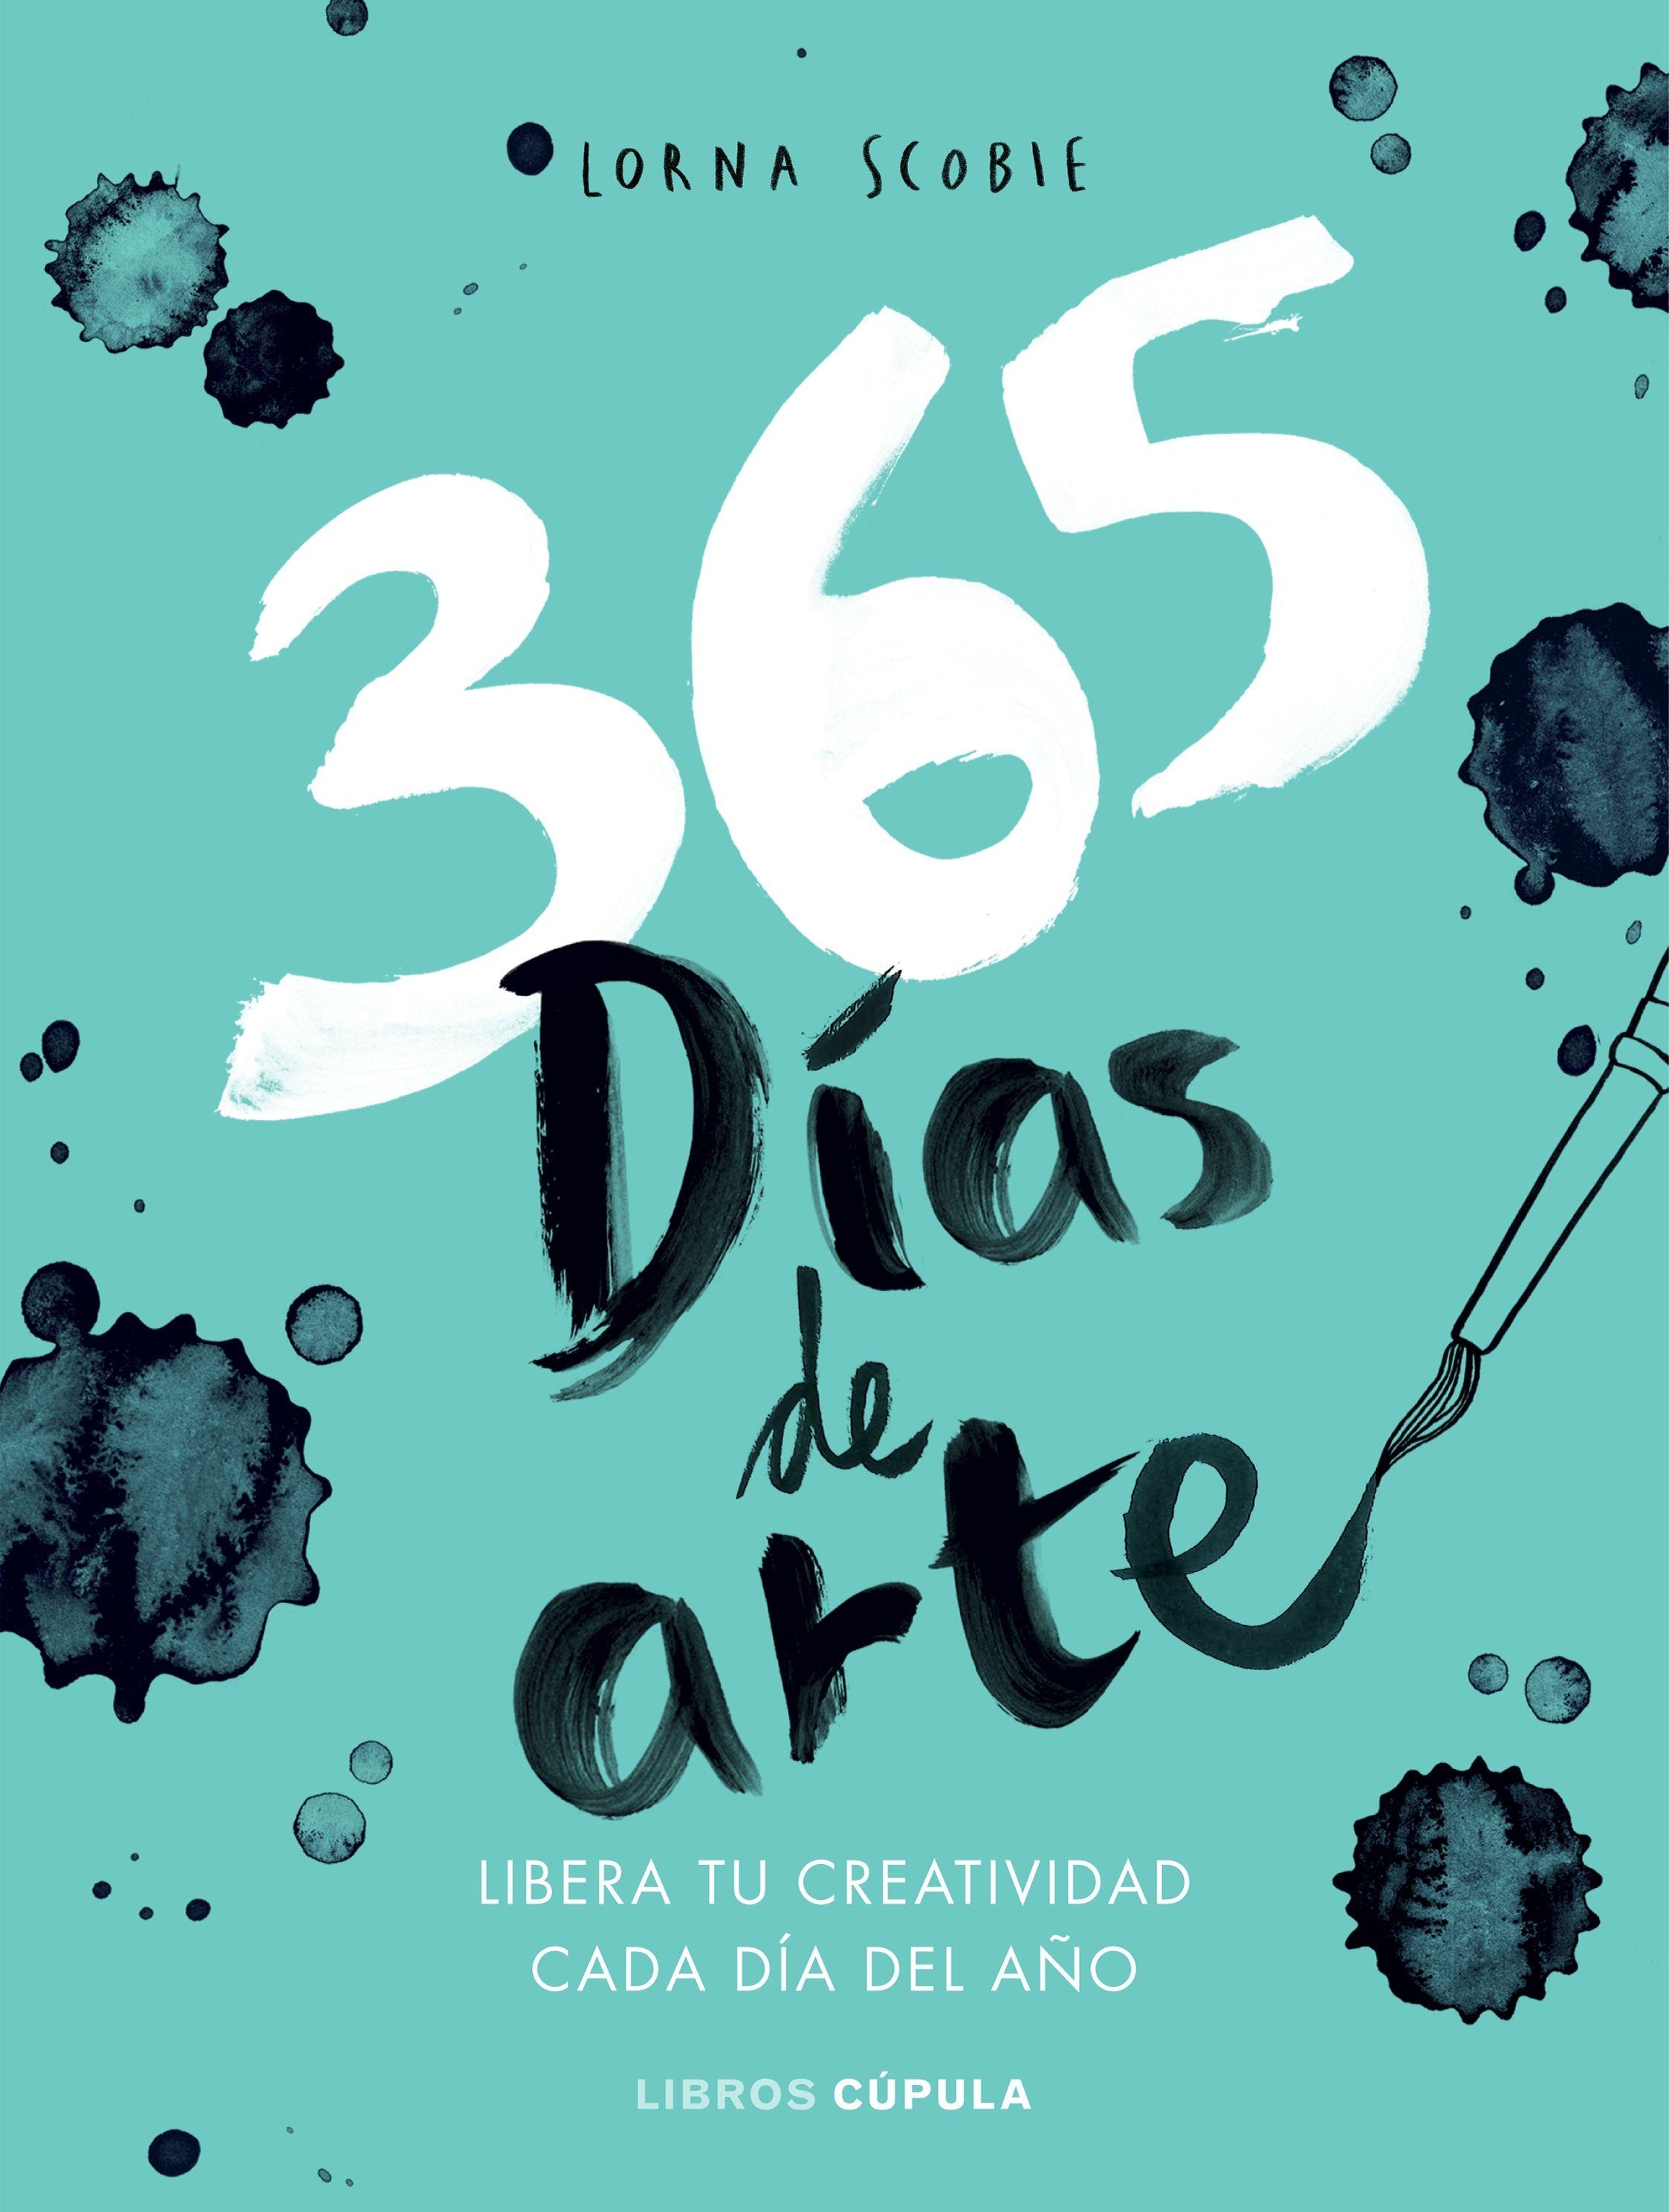 365 días de arte "Libera tu creatividad cada día del año"